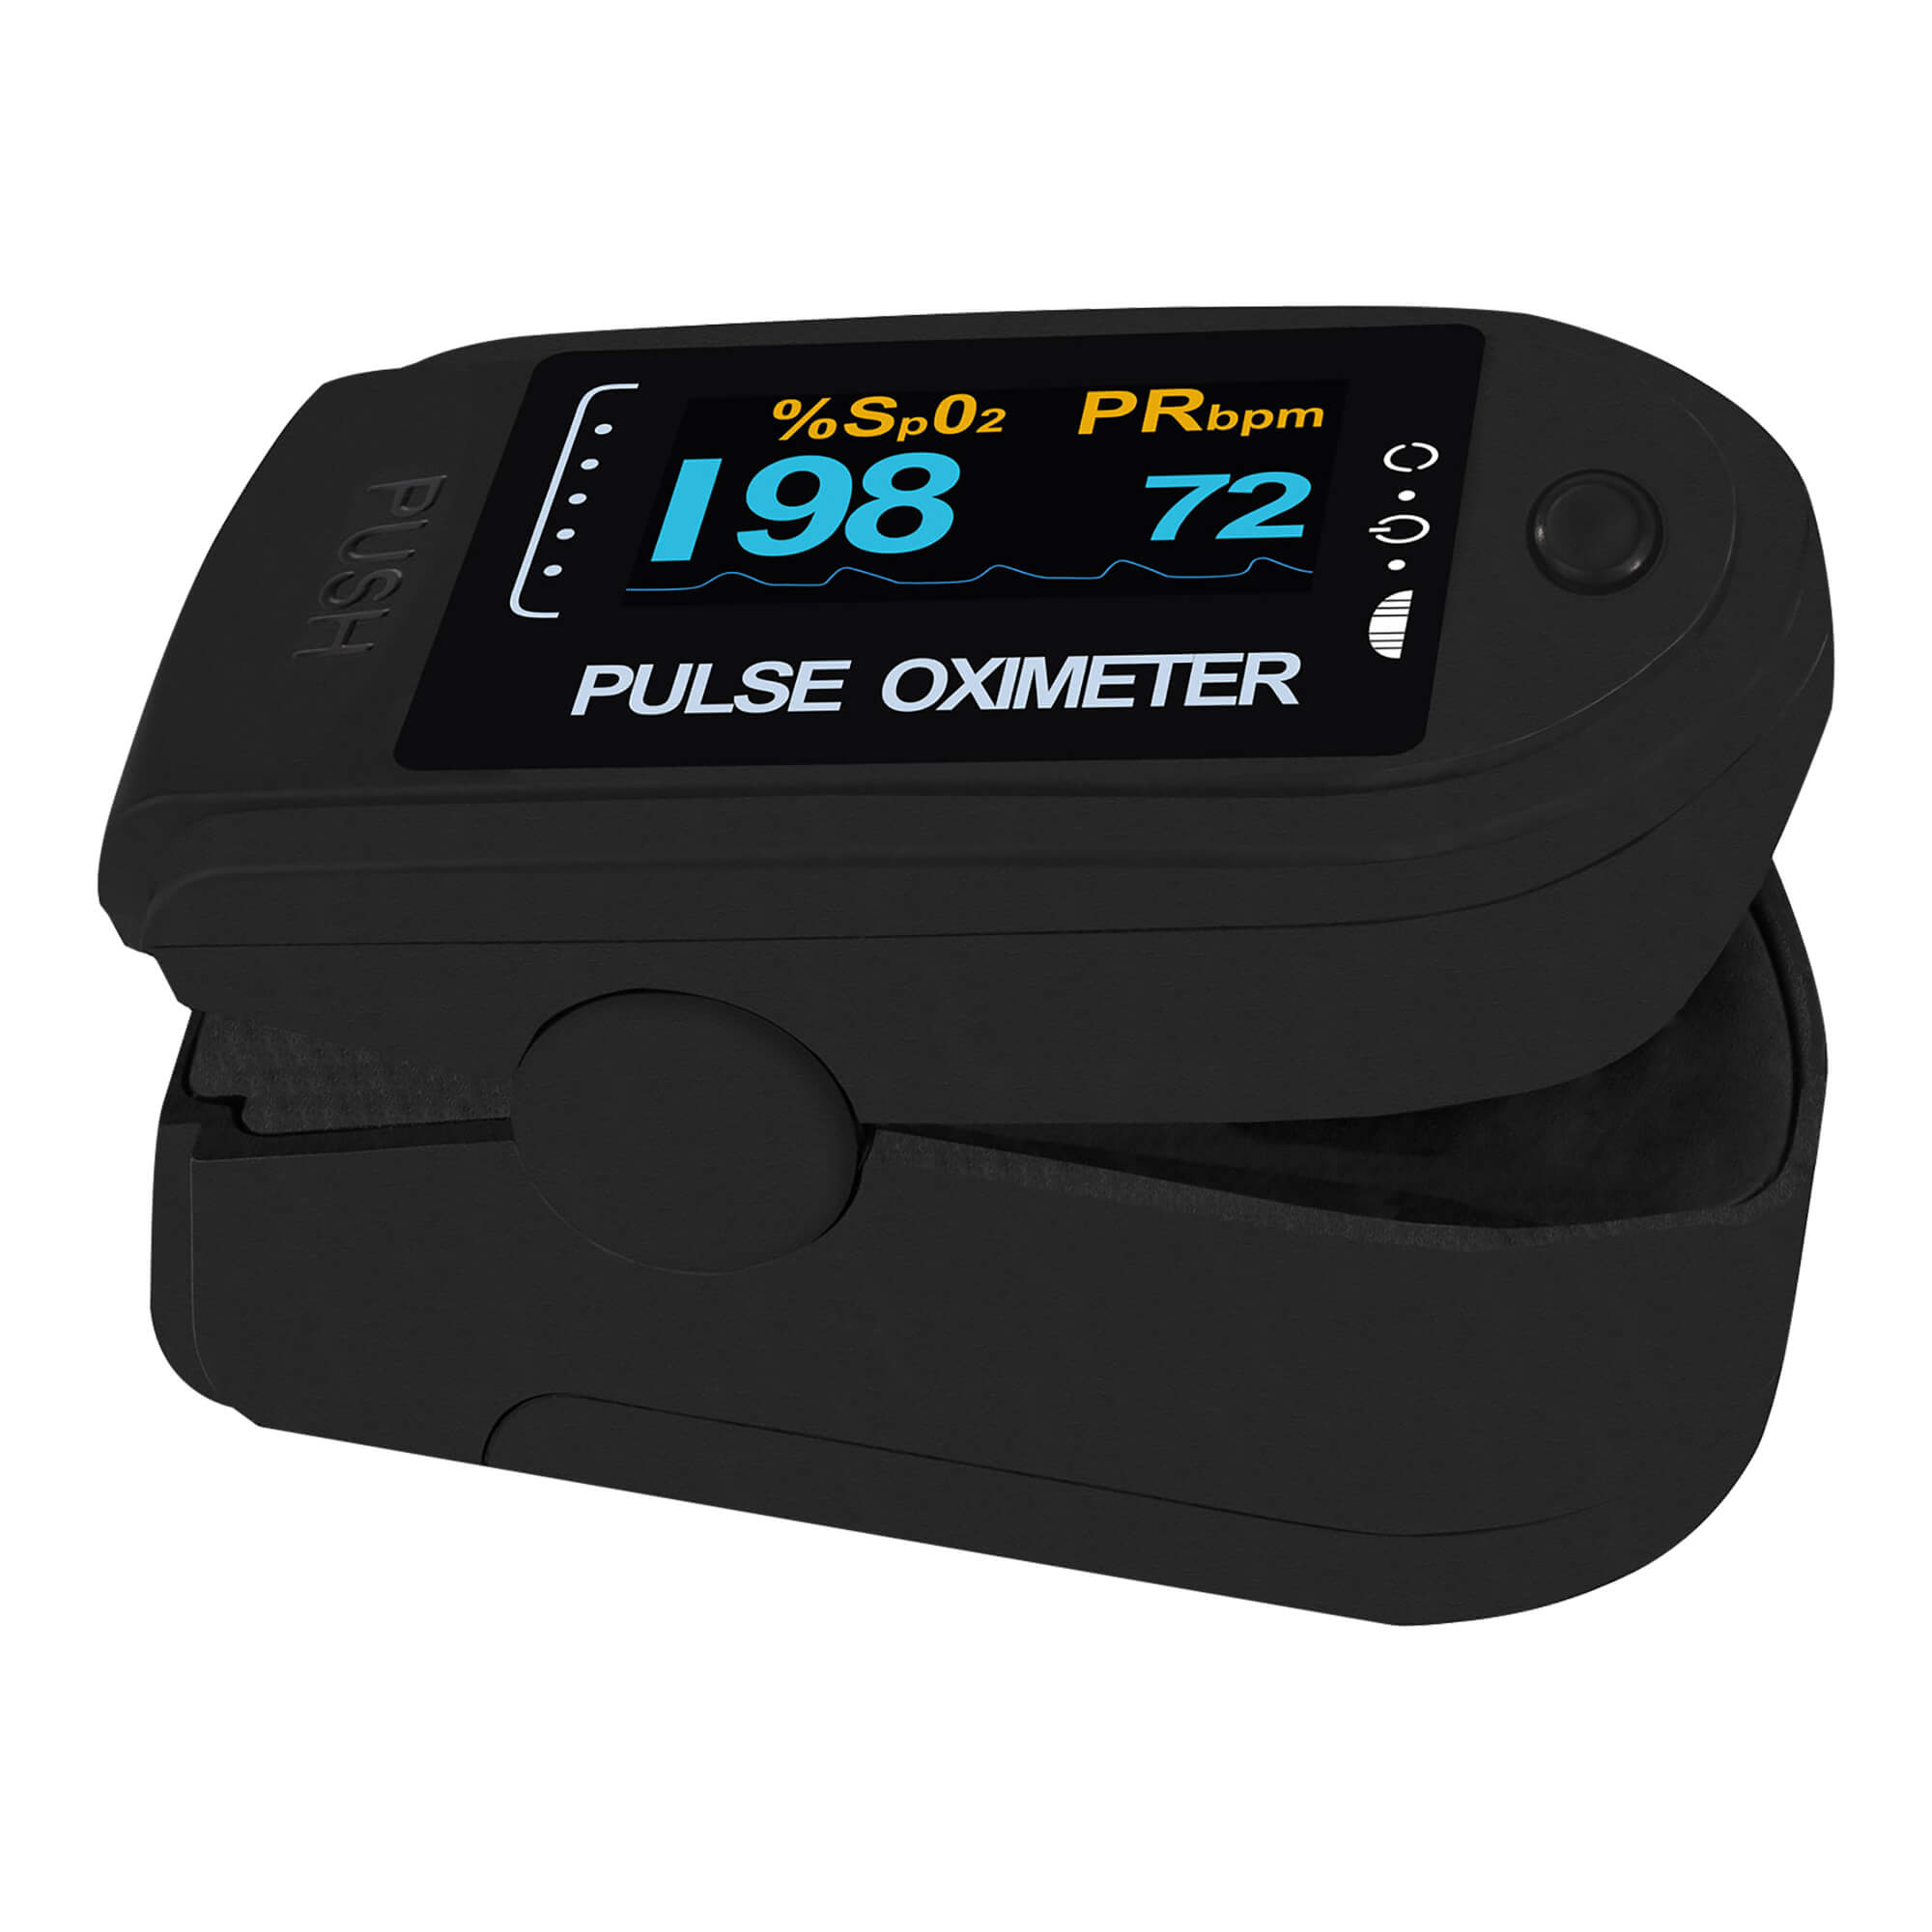 Finger-Puls-Oximeter mit OLED-Anzeige. Farbe: schwarz.